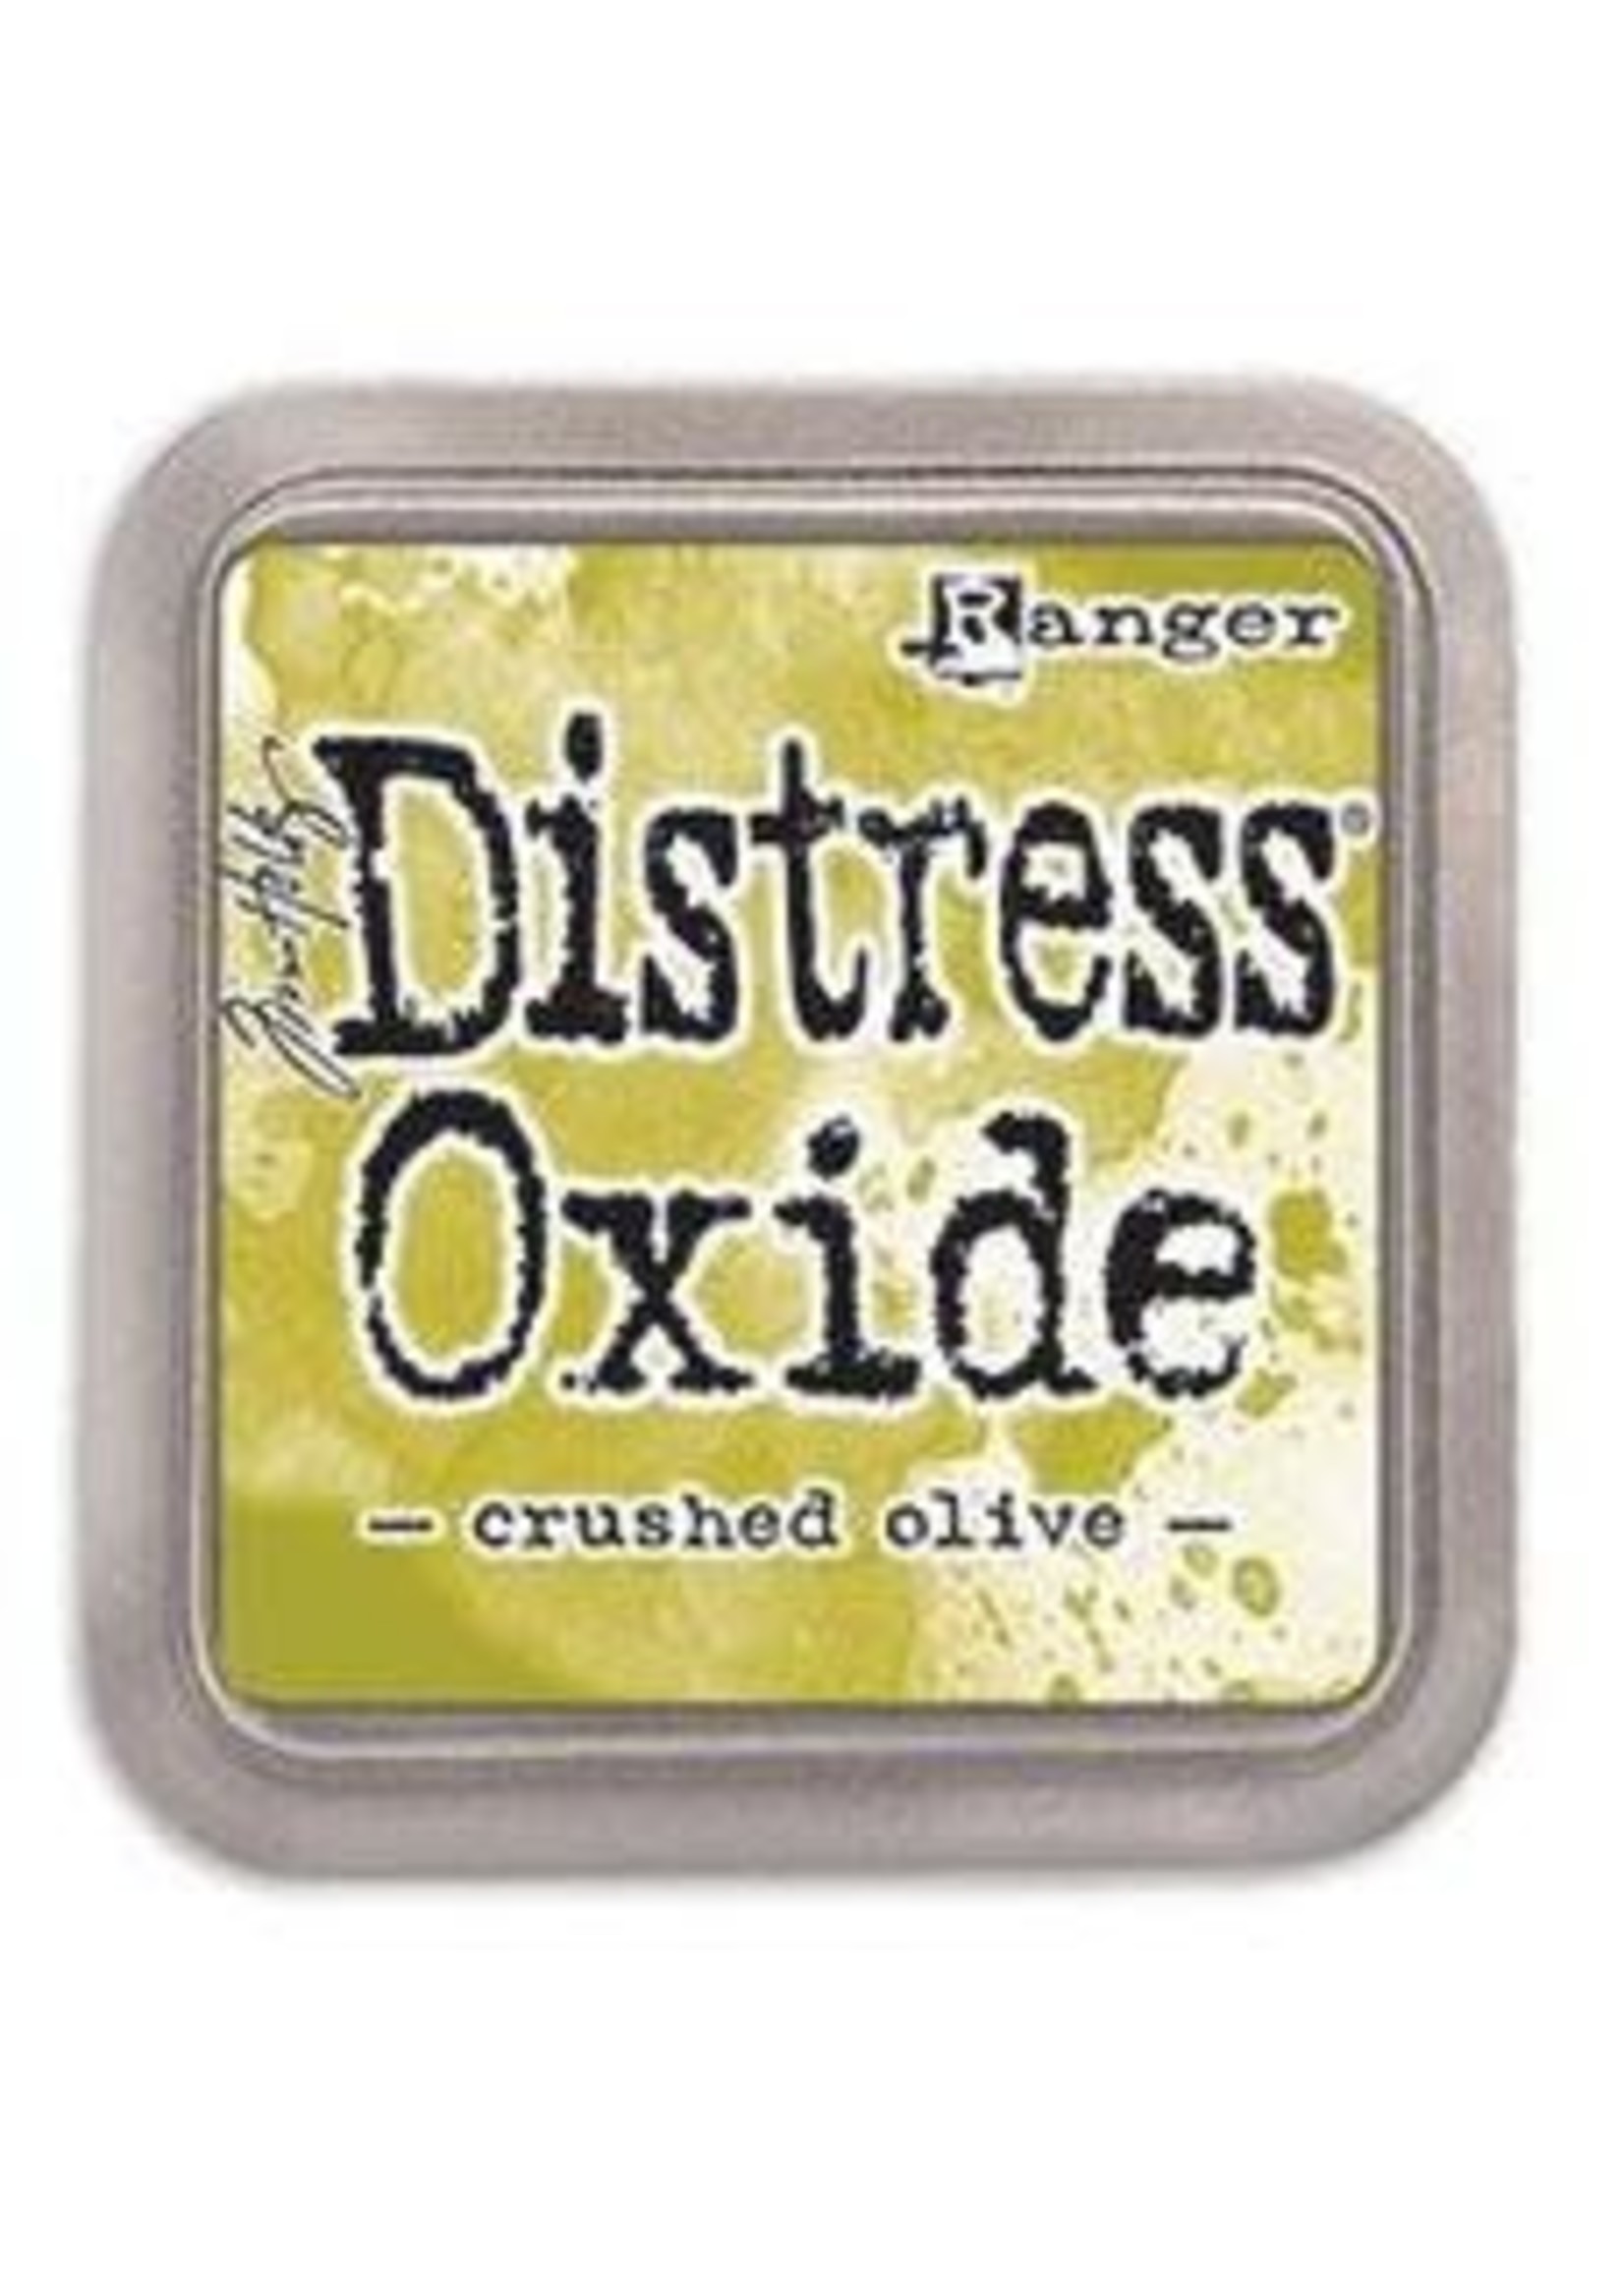 RANGER Distress Oxide Crushed Olive